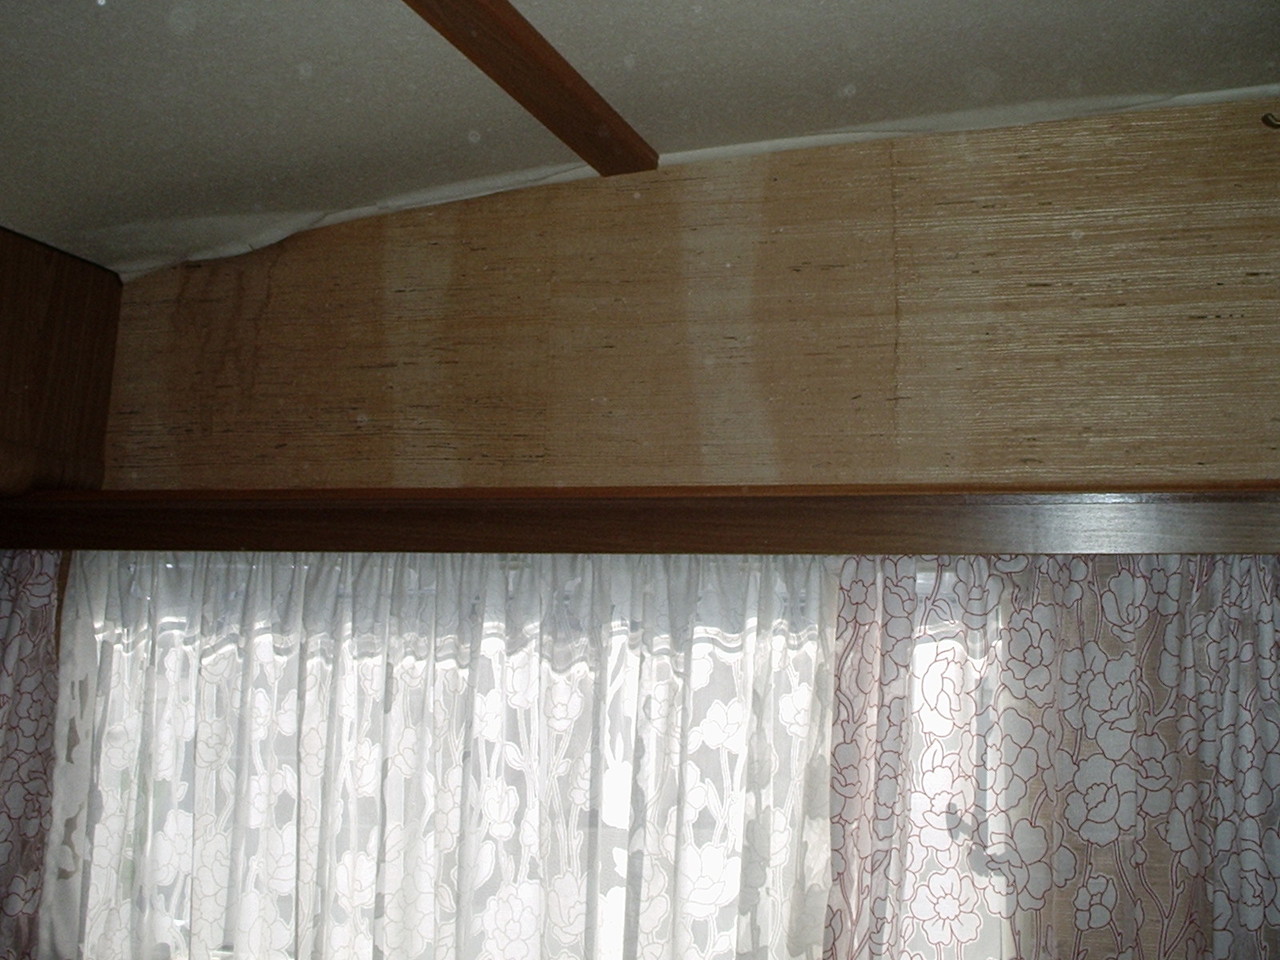 fehlende Tapete auf beiden Seiten des Schlafzimmers
links oben sieht man bei genauem Hinschauen den Wasserschaden, der sich bis nach unten zum Boden durchzieht.
